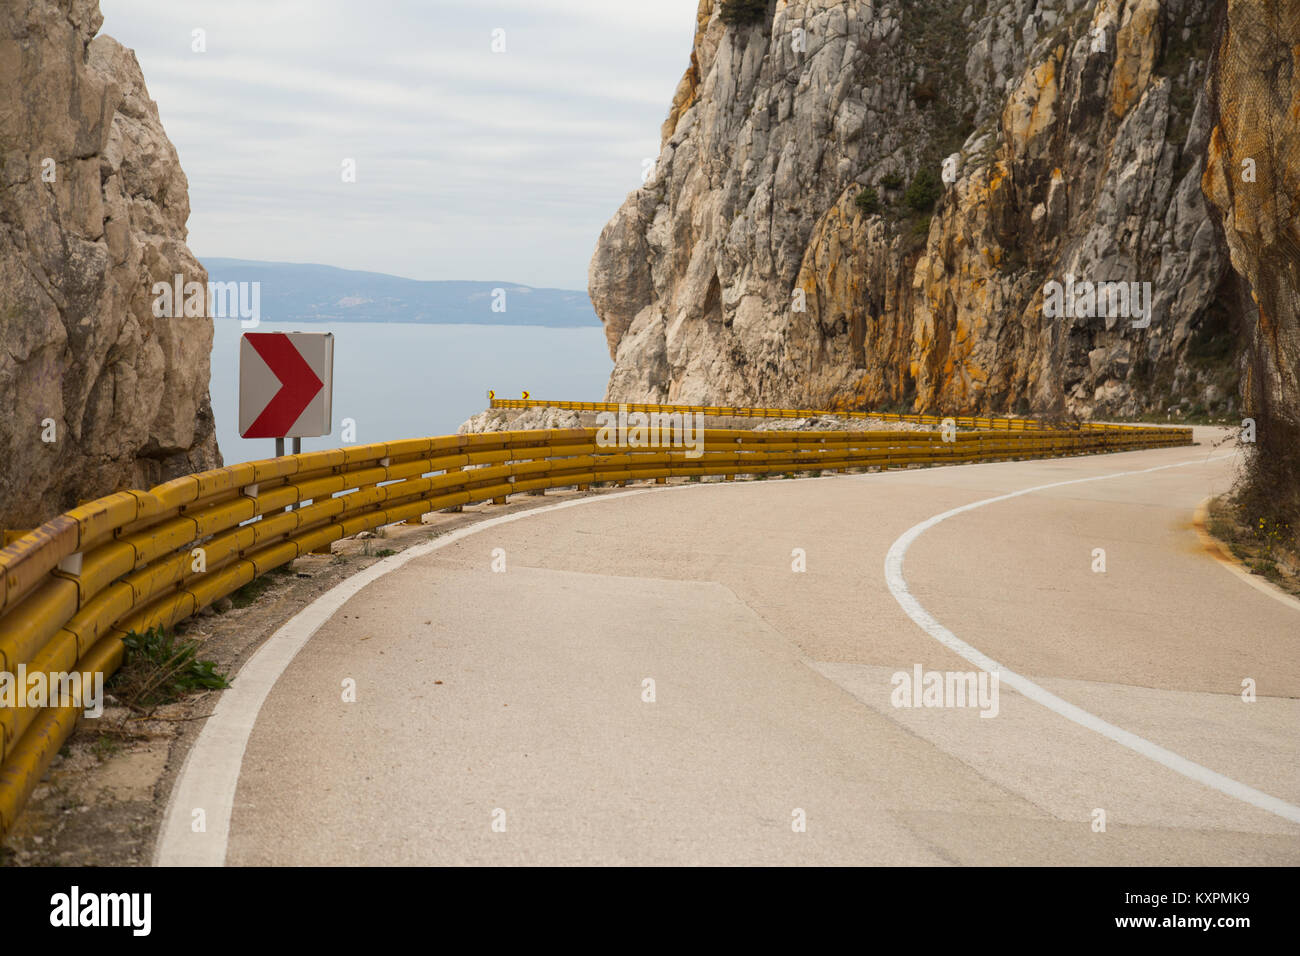 Autoroute de l'Adriatique, la route européenne E65, avec ses barrières de circulation jaune près de Podgora en Croatie Banque D'Images